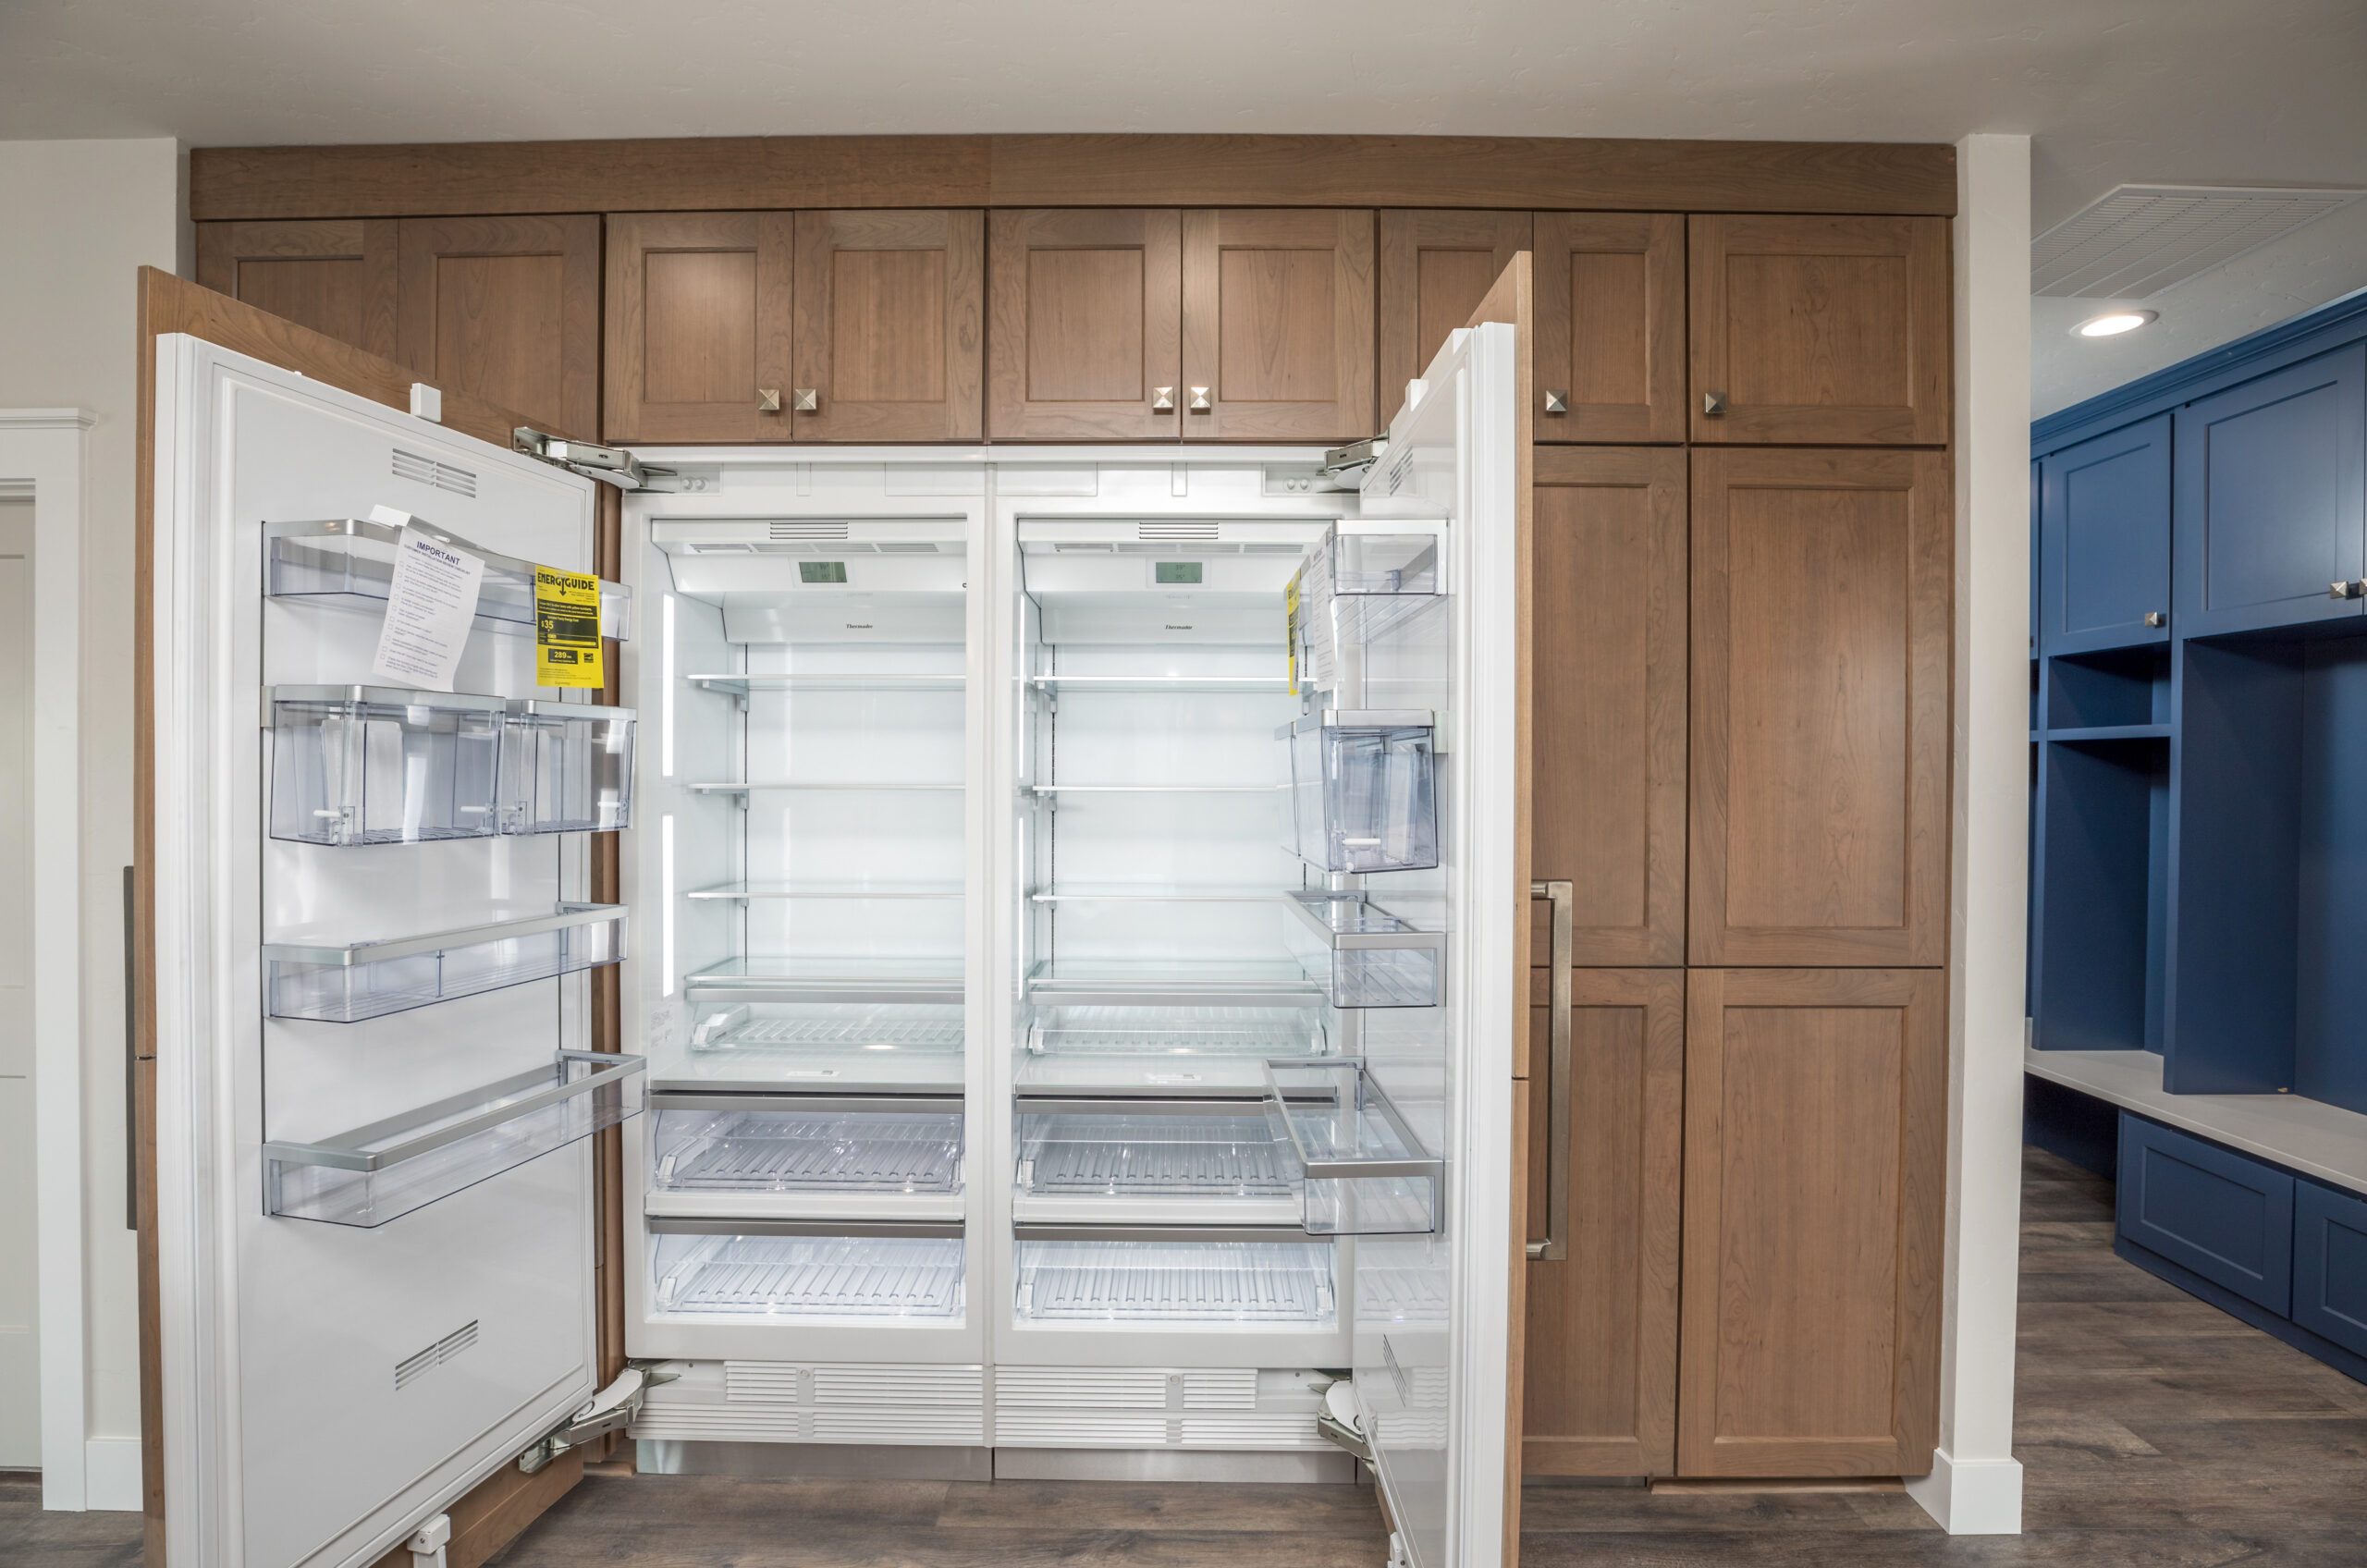 Double door kitchen refrigerator.